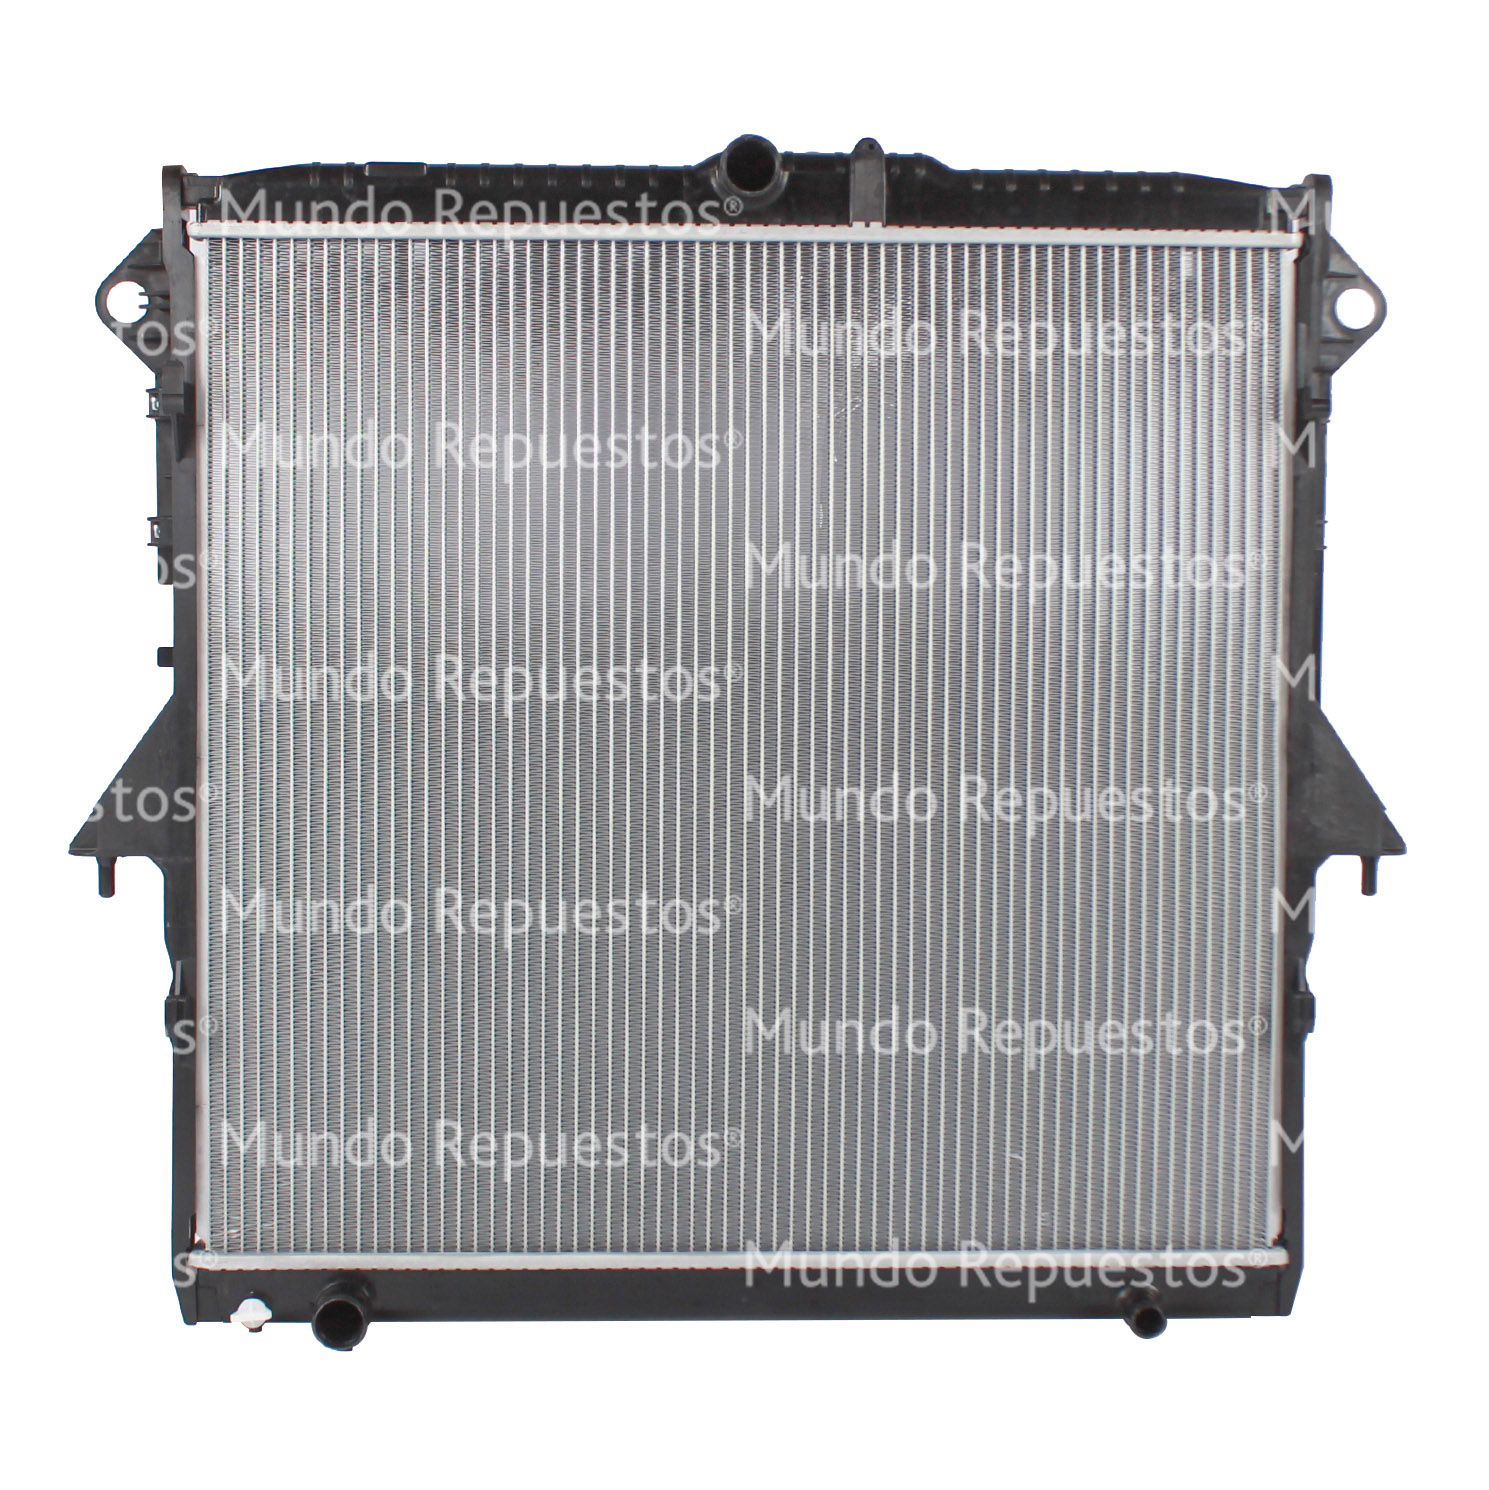 Radiador motor 605-645-26 00-00 CON Y SIN AIRE ACONDICIONADO AUTOMATICO MECANICO TIPO ORIGINAL marca Wurtex disponible en Mundo Repuestos